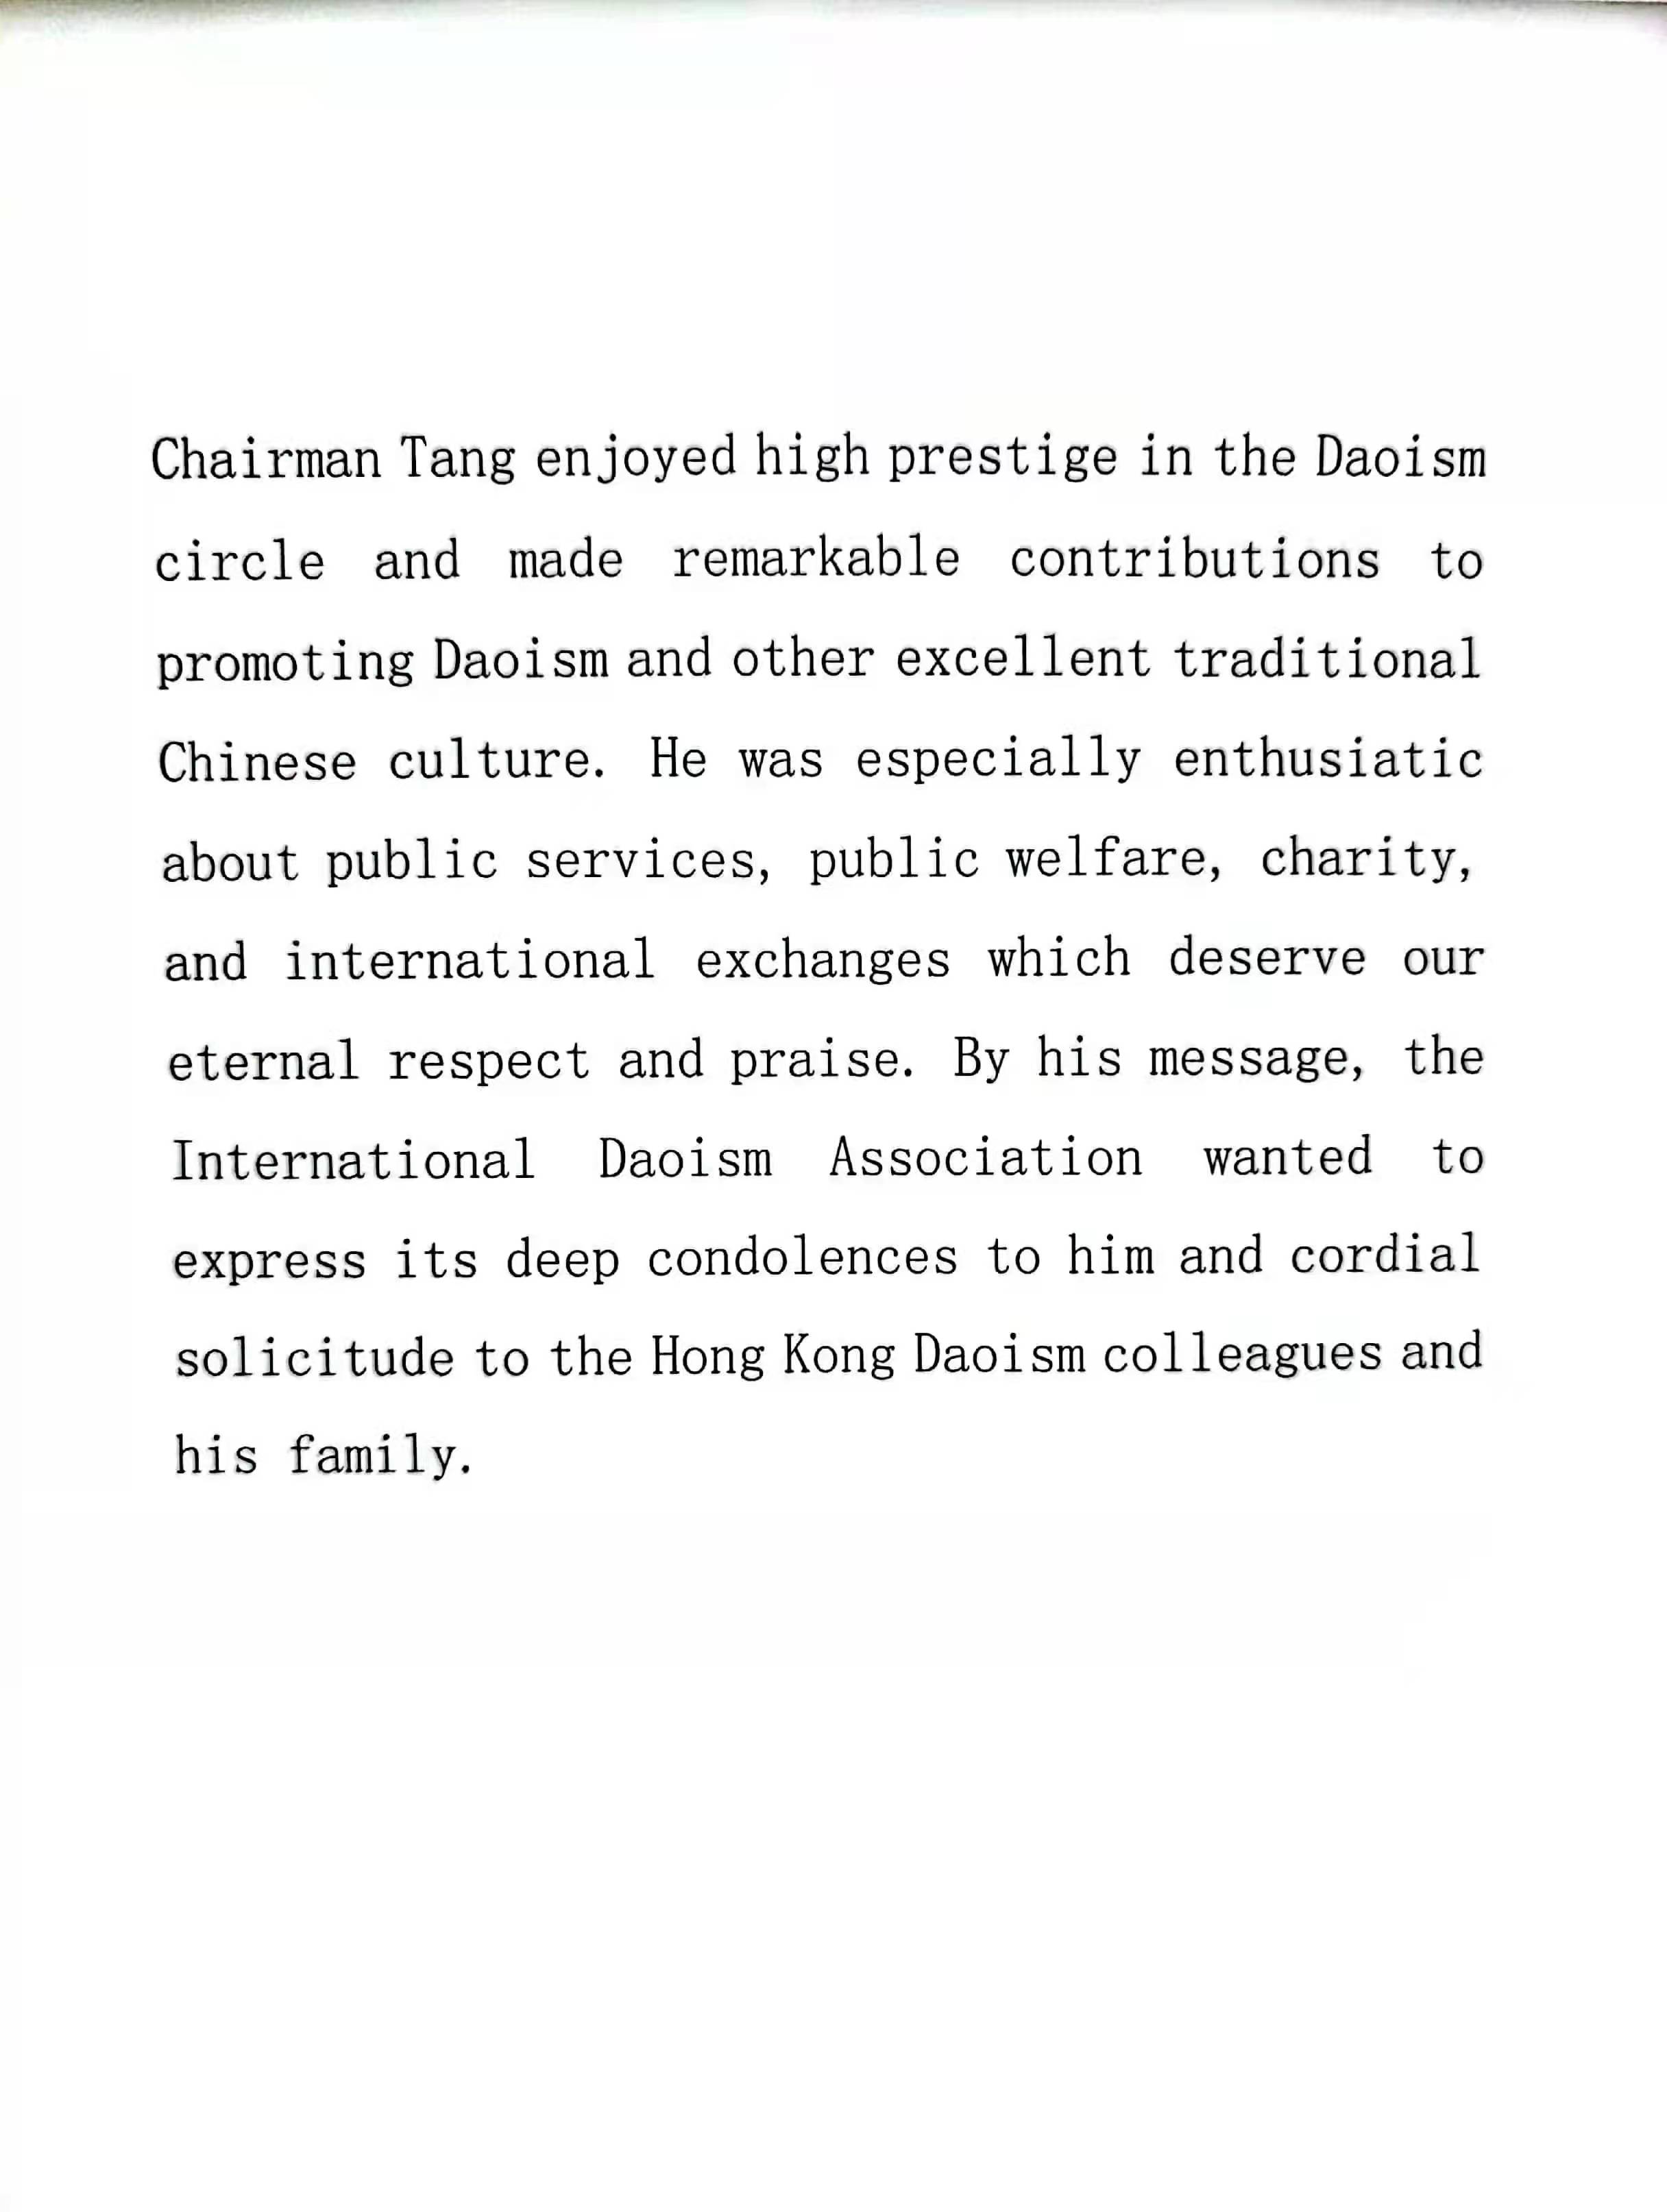 国际道教协会向香港道教联合会老领导汤伟奇主席致以唁电